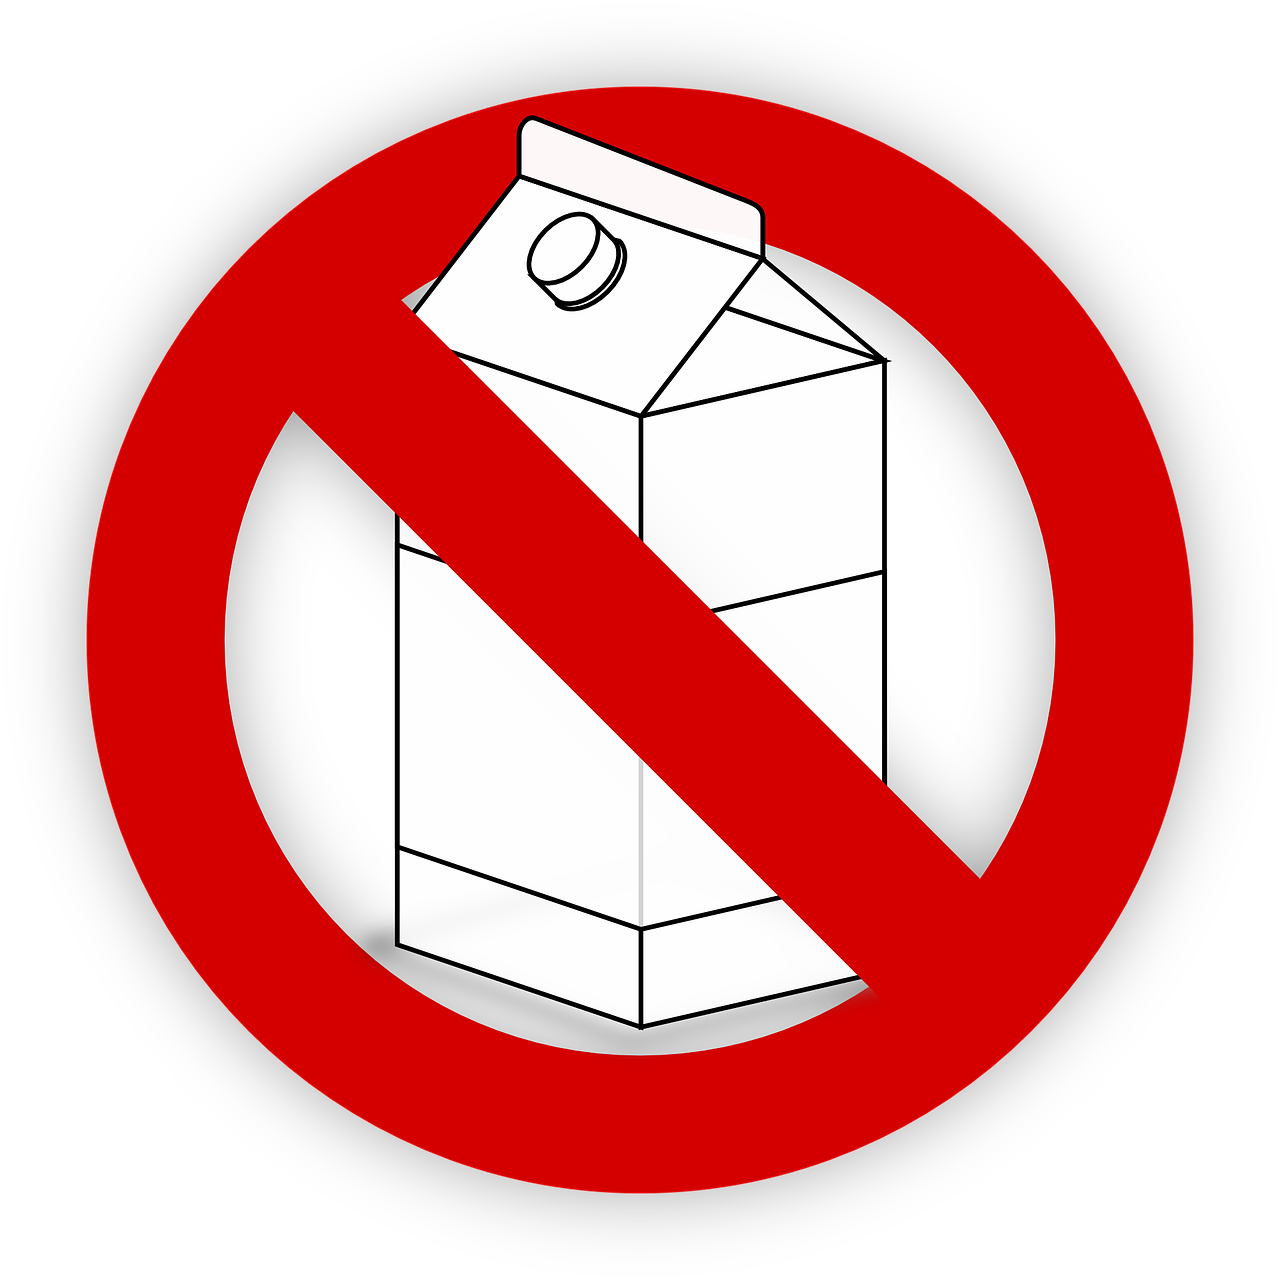 Молоко перечеркнуто. Молоко запрещено. Запрет на молоко. Перечеркнутые молочные продукты. Молочная продукция запрет